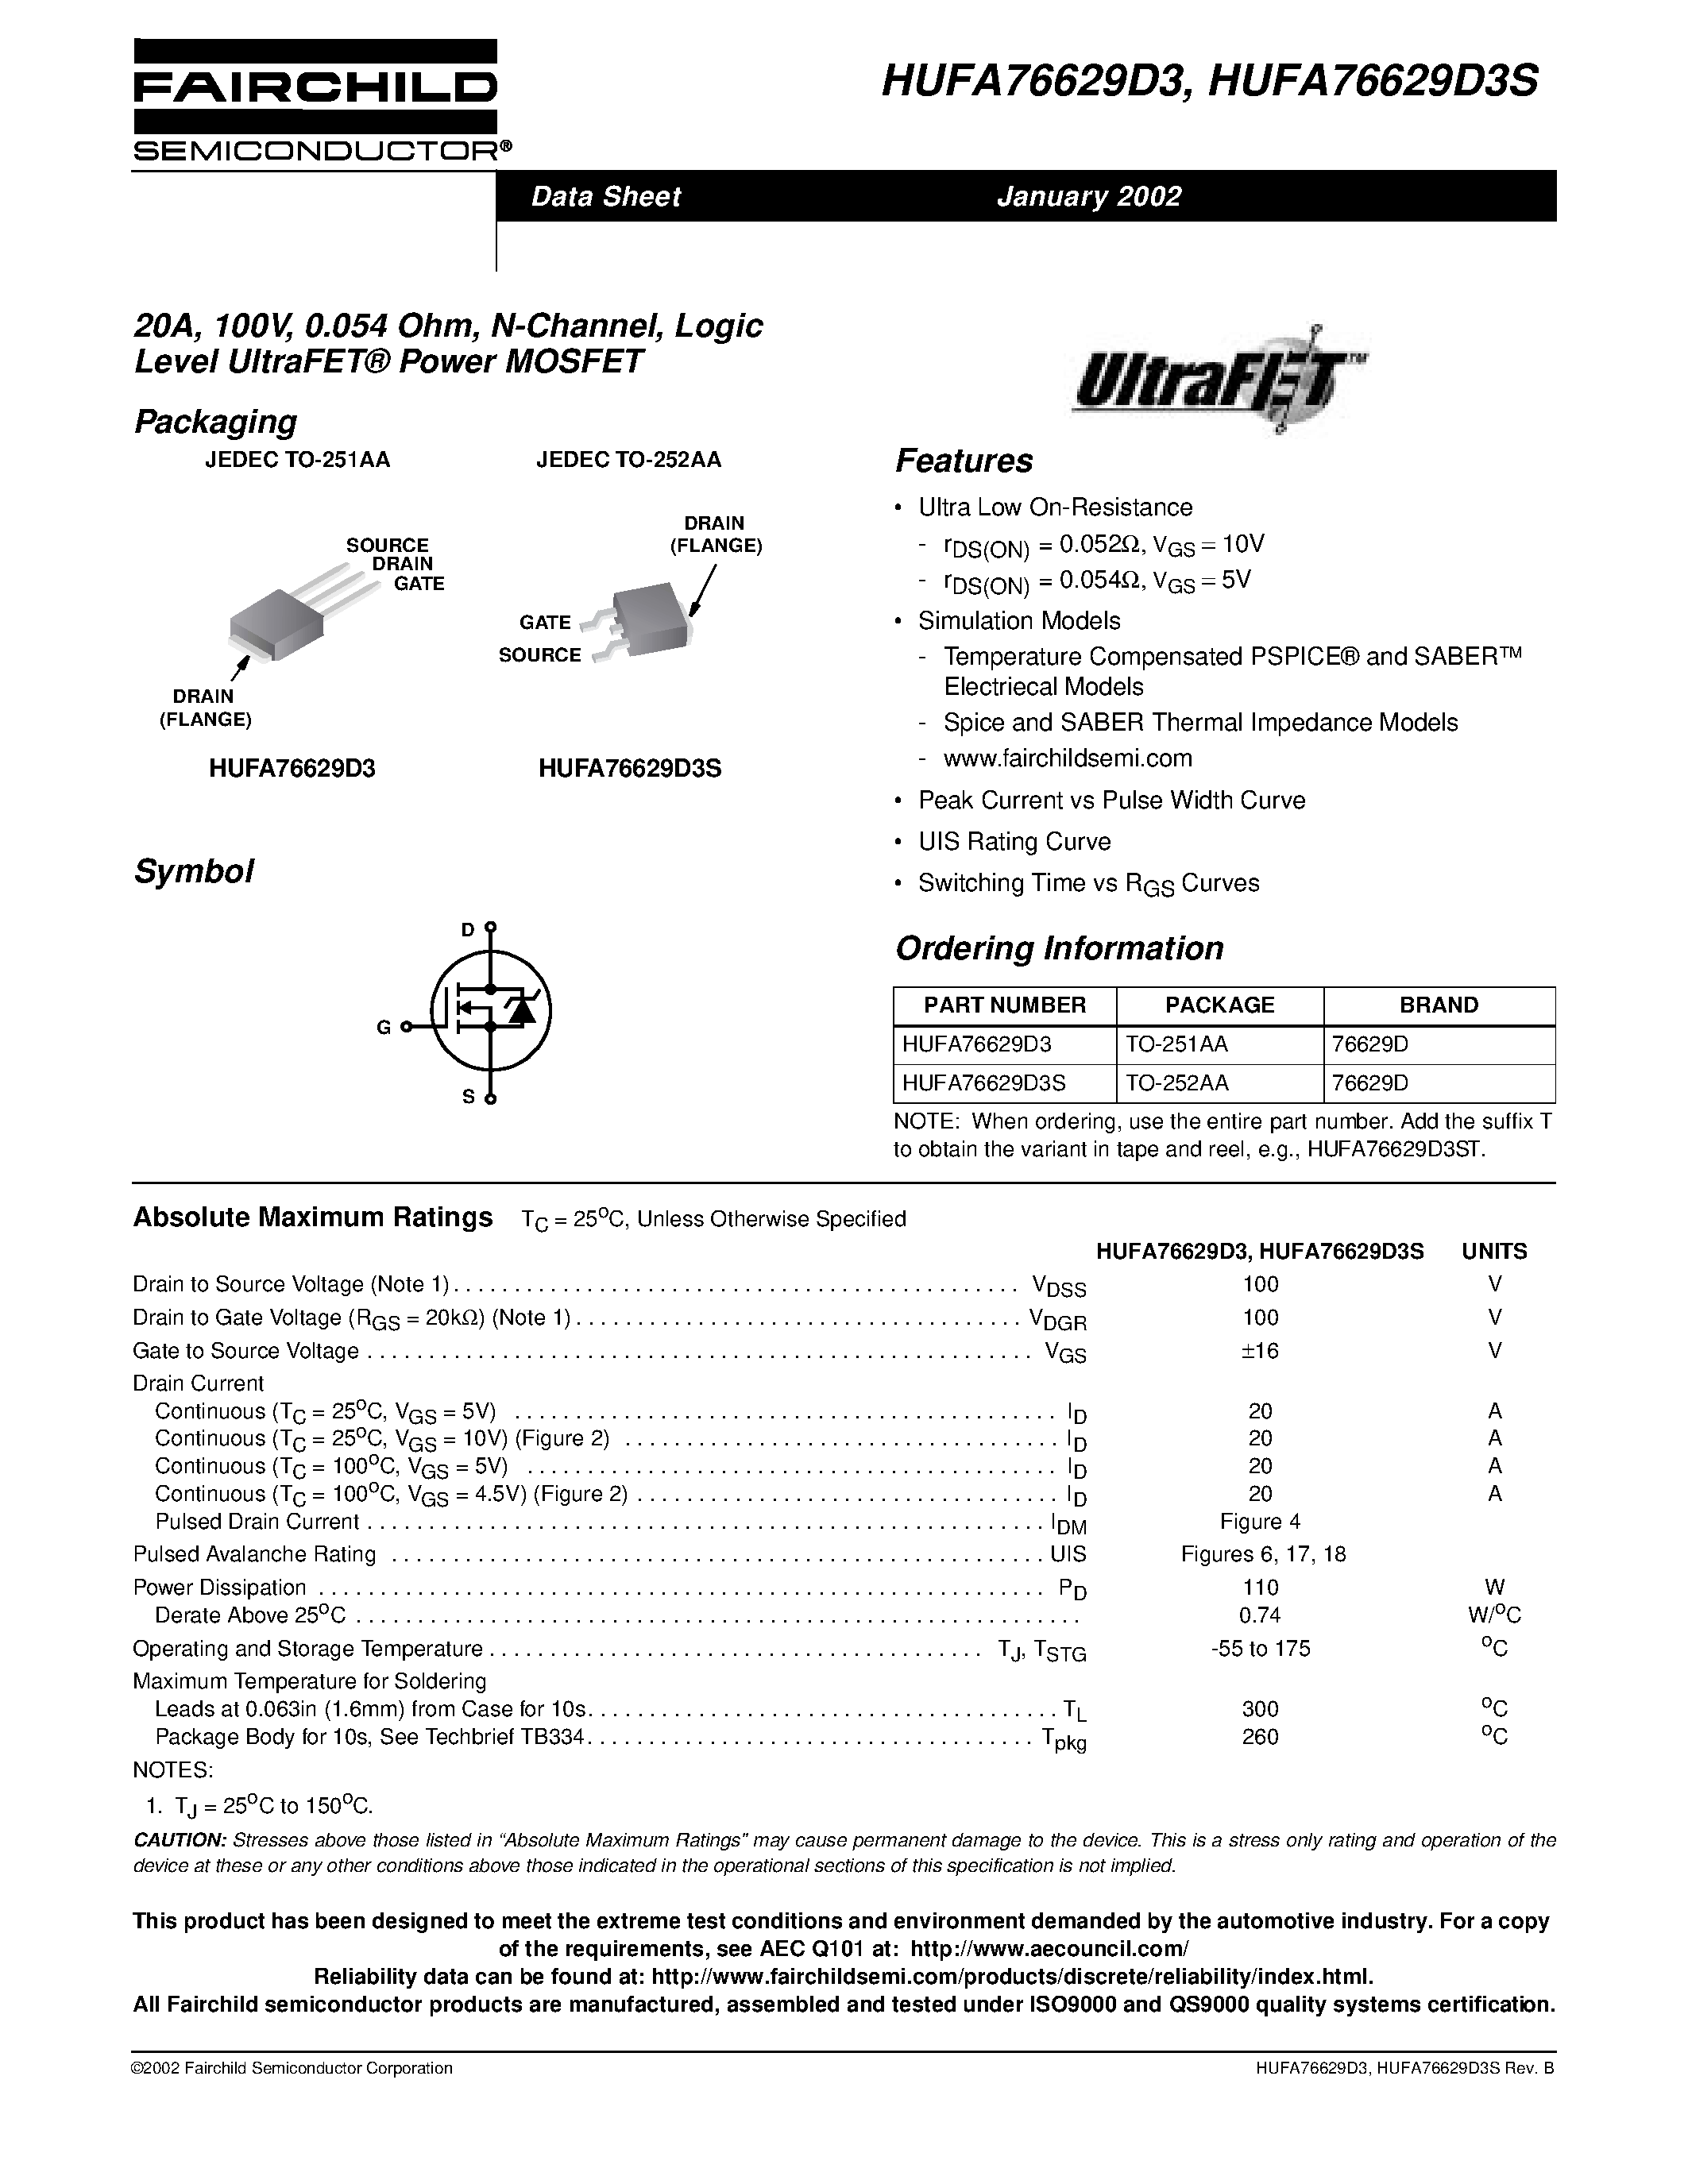 Даташит HUFA76629D3 - 20A/ 100V/ 0.054 Ohm/ N-Channel/ Logic Level UltraFET Power MOSFET страница 1